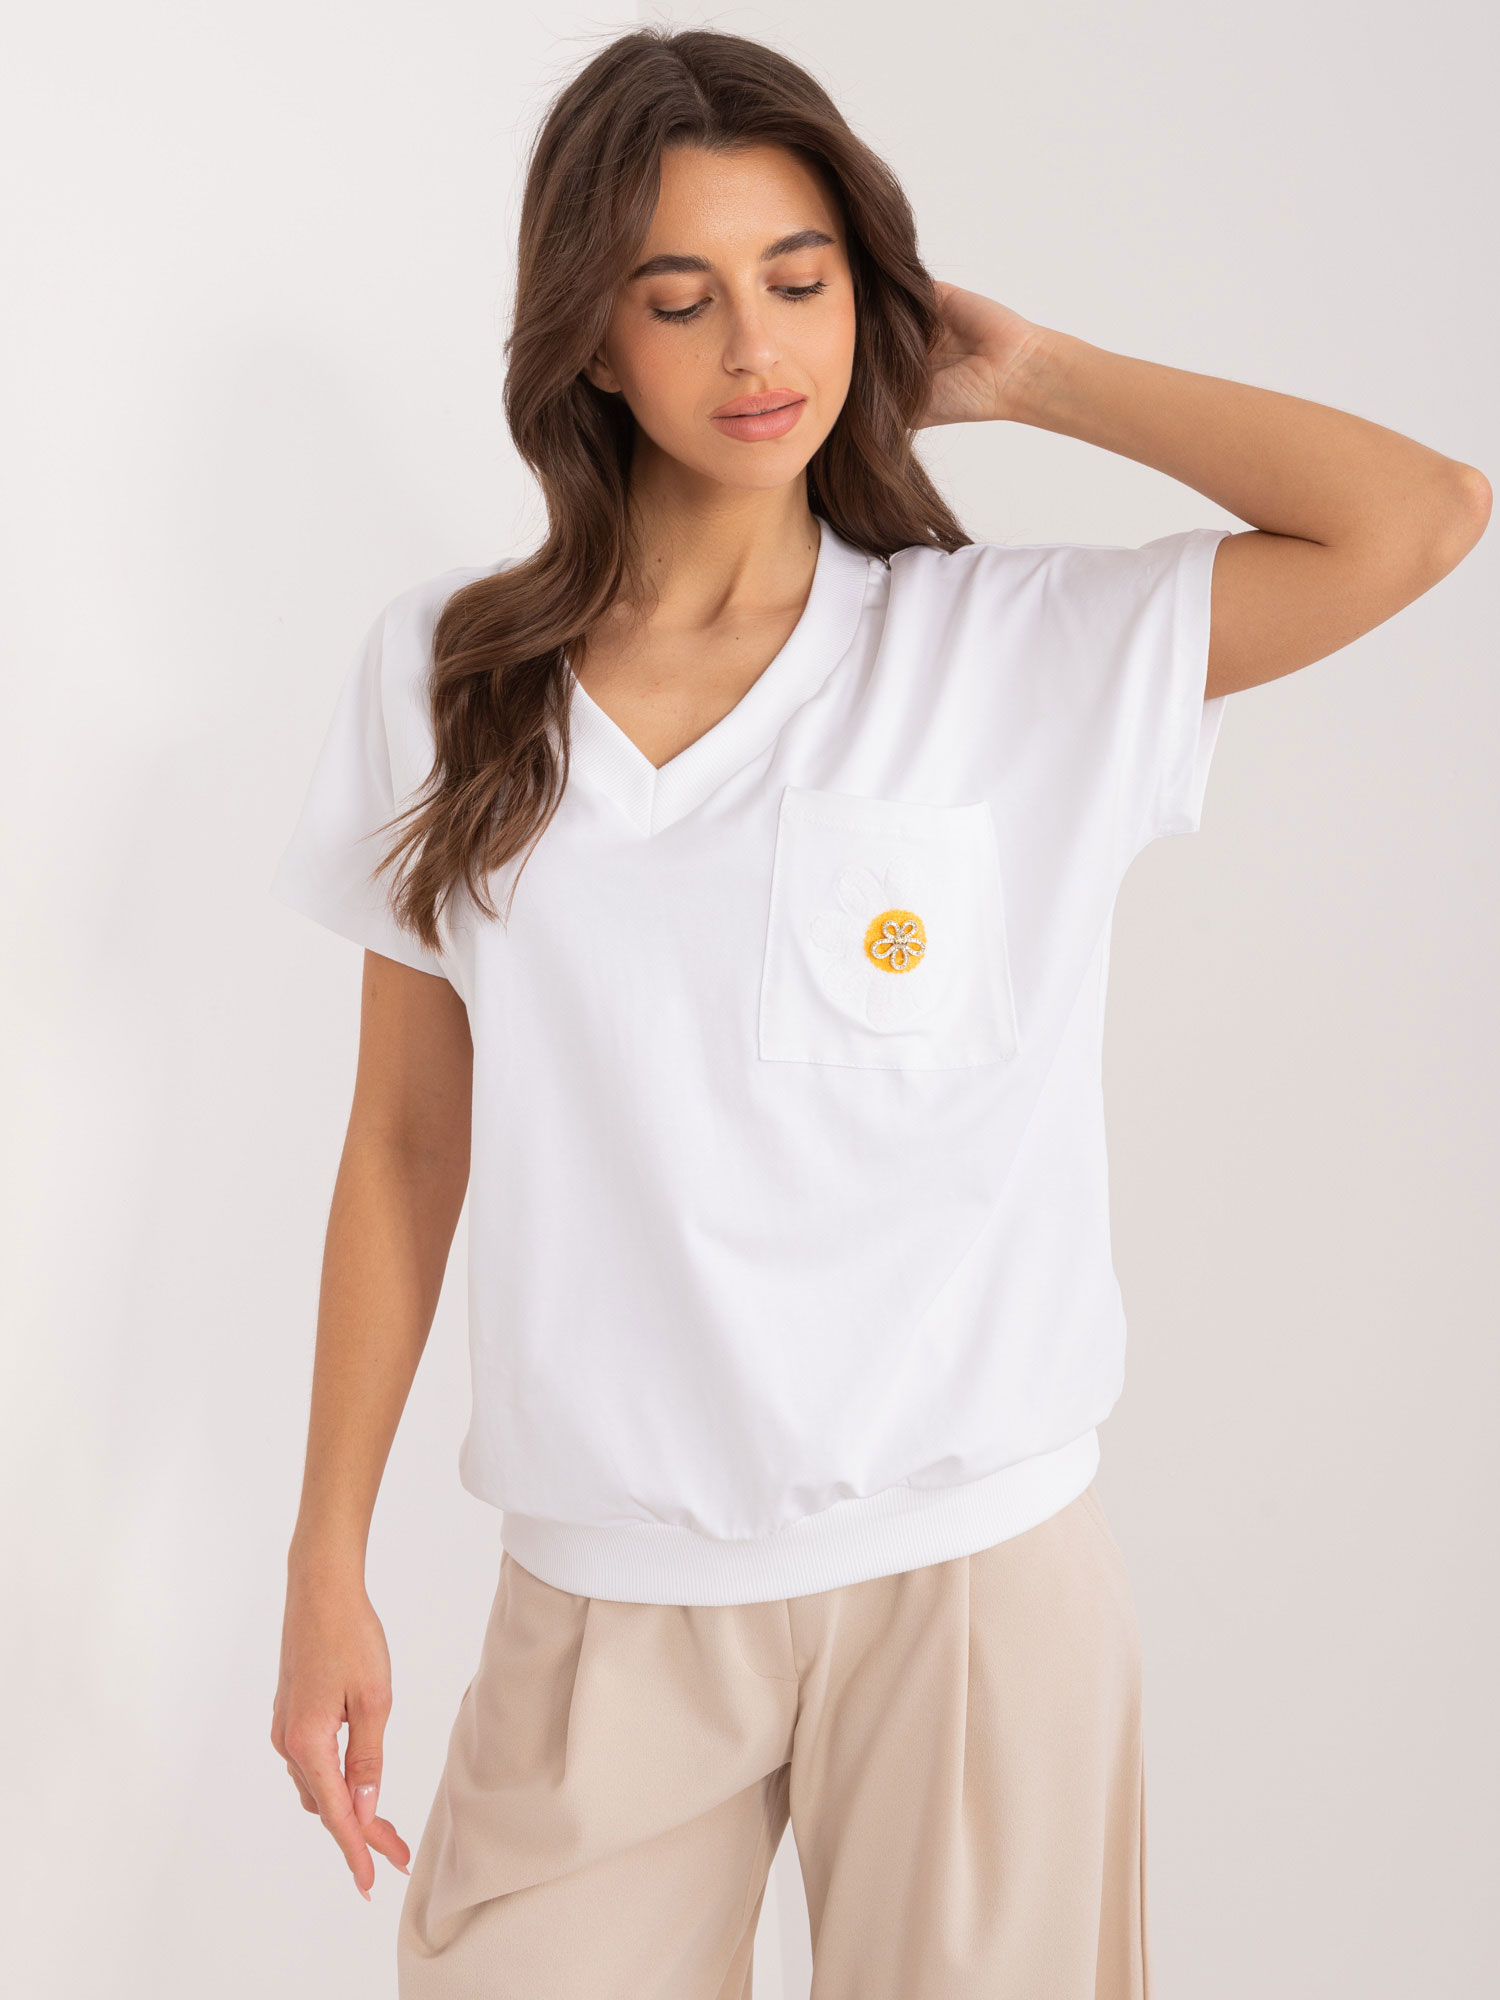 Bílé tričko s výstřihem a výšivkou na kapsy RV-BZ-9626.28-white Velikost: S/M